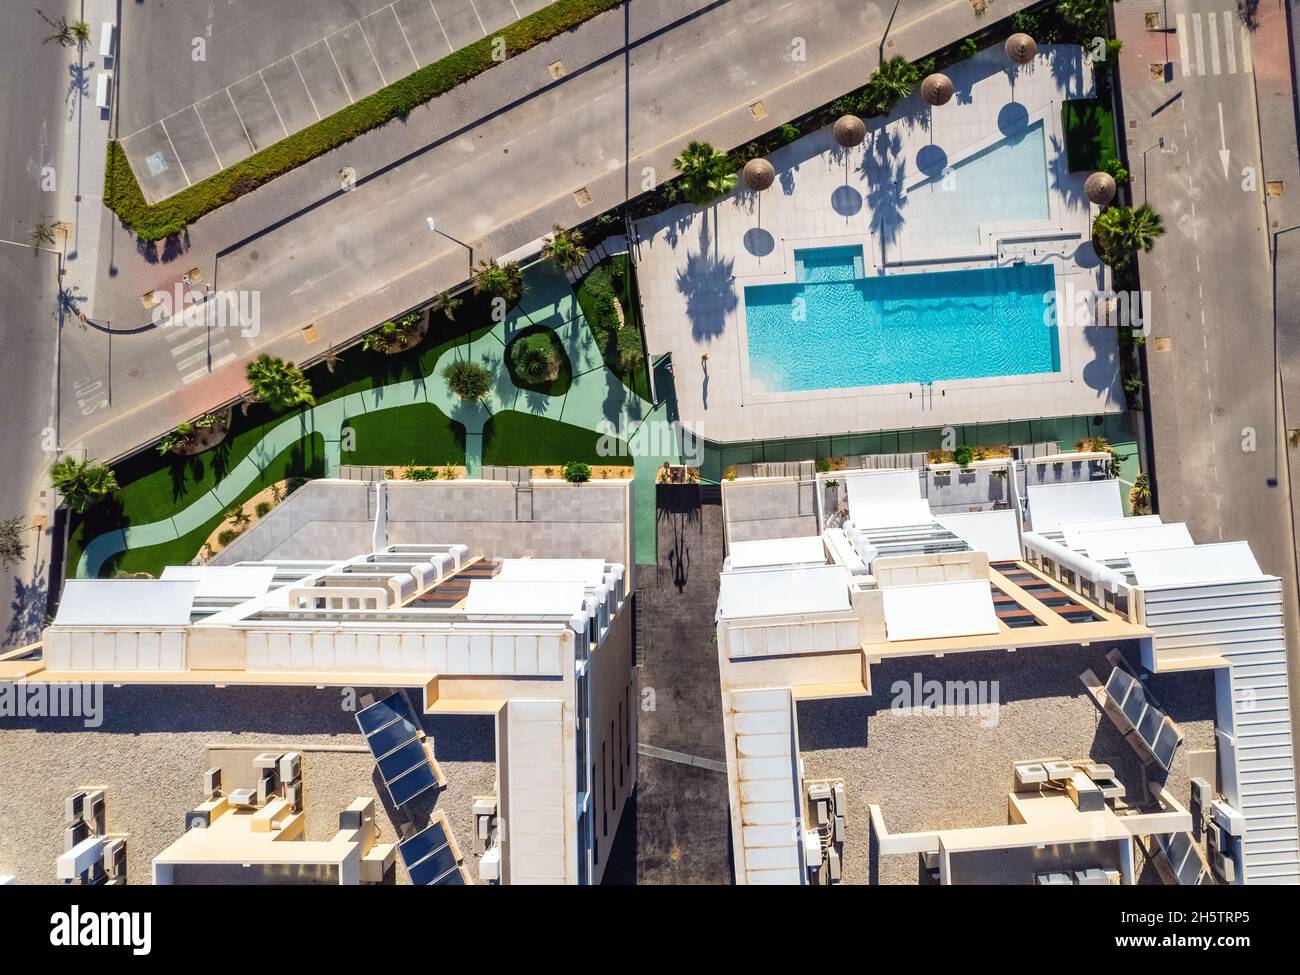 Drone aérien point de vue immeubles résidentiels à hauteur élevée avec piscine, jardins intérieurs bien entretenus avec des arbres tropicaux de Mil Palmeras.Espagne Banque D'Images